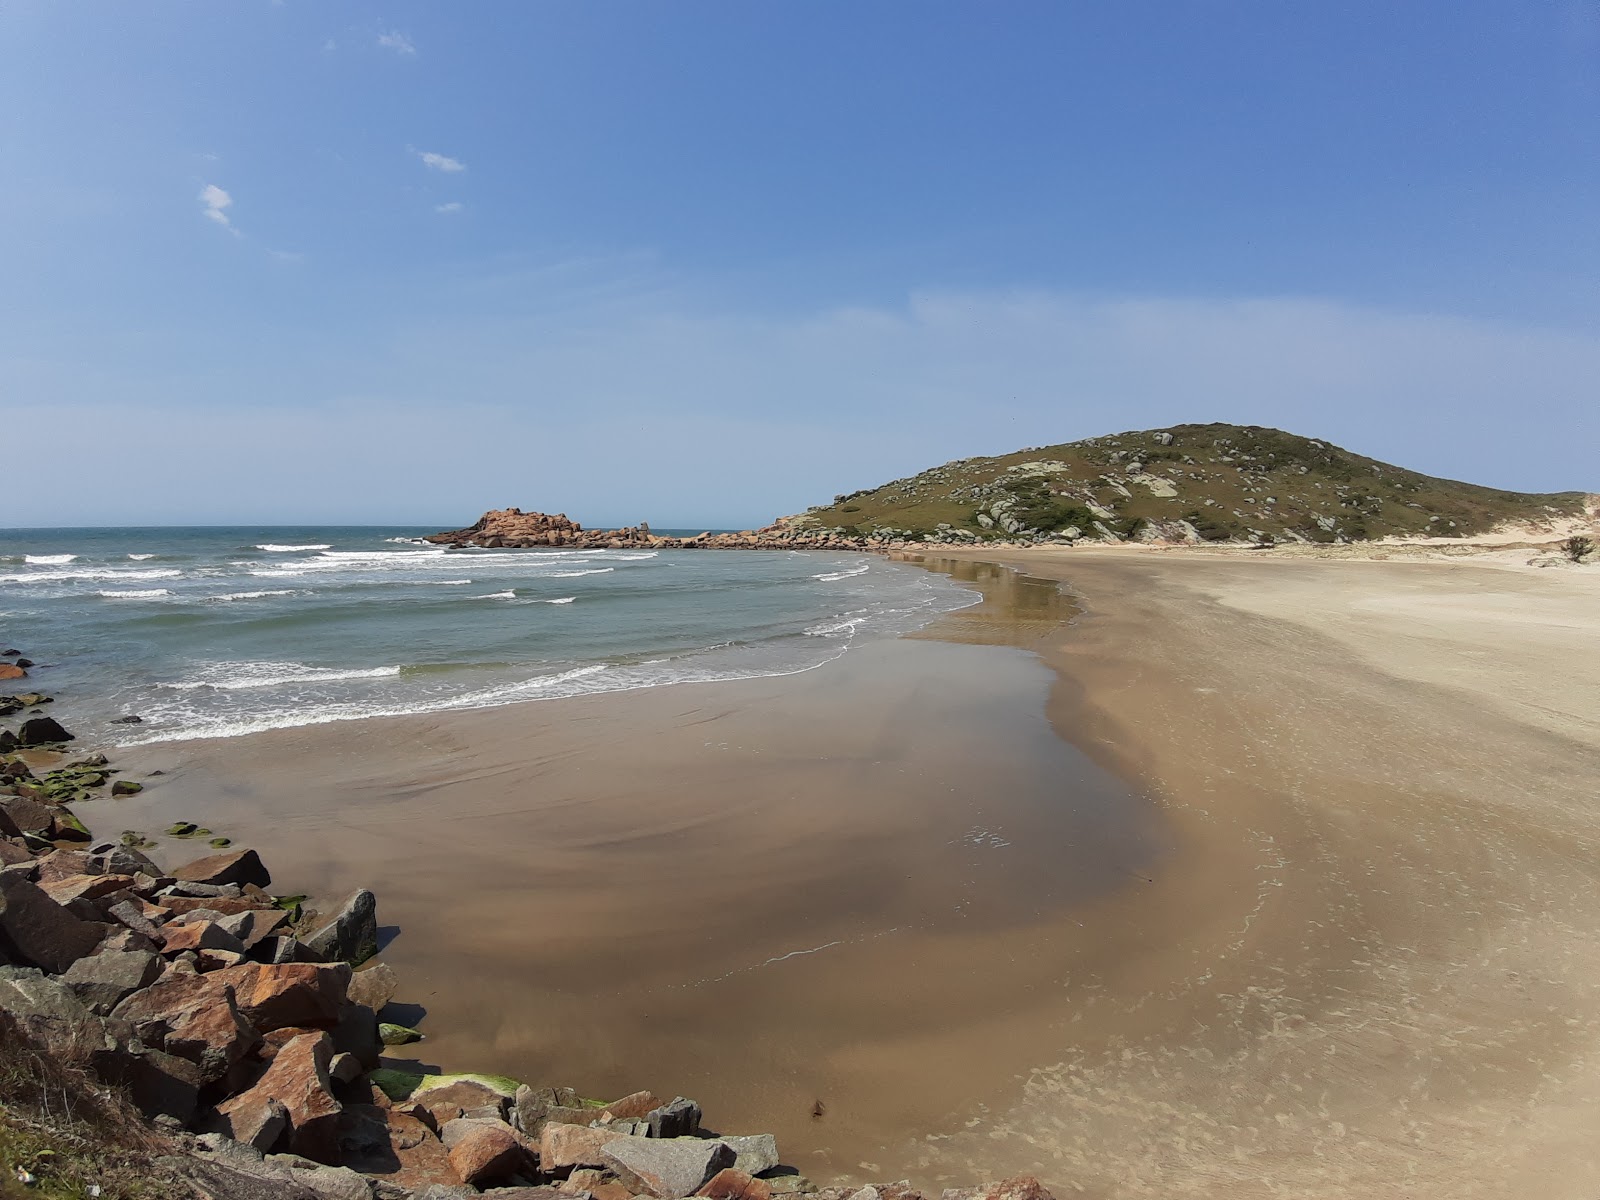 Fotografie cu Praia do Tamborete cu o suprafață de nisip strălucitor